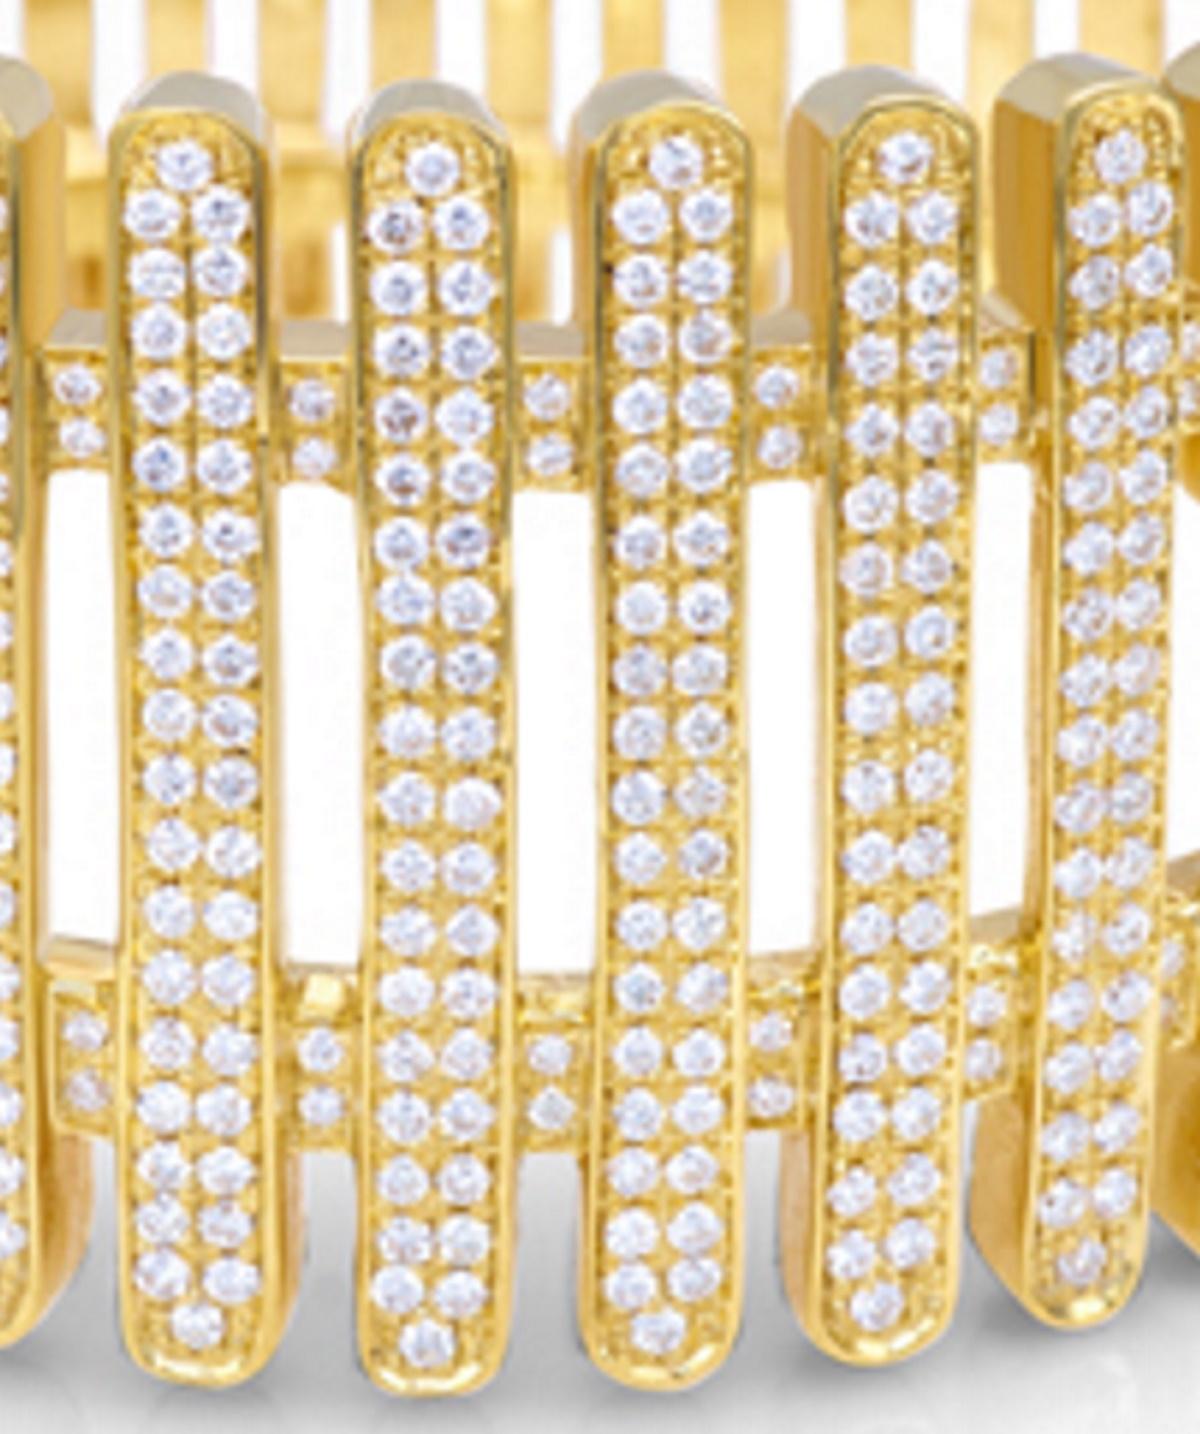 Bracelet clair de lune en 18 kt  or jaune et diamants blancs 
Ces pièces sont tout simplement uniques dans l'histoire de notre production

le poids total de l'or est de  gr 92.20
le poids total des diamants blancs est de ct 5.36 - couleur GH clarté